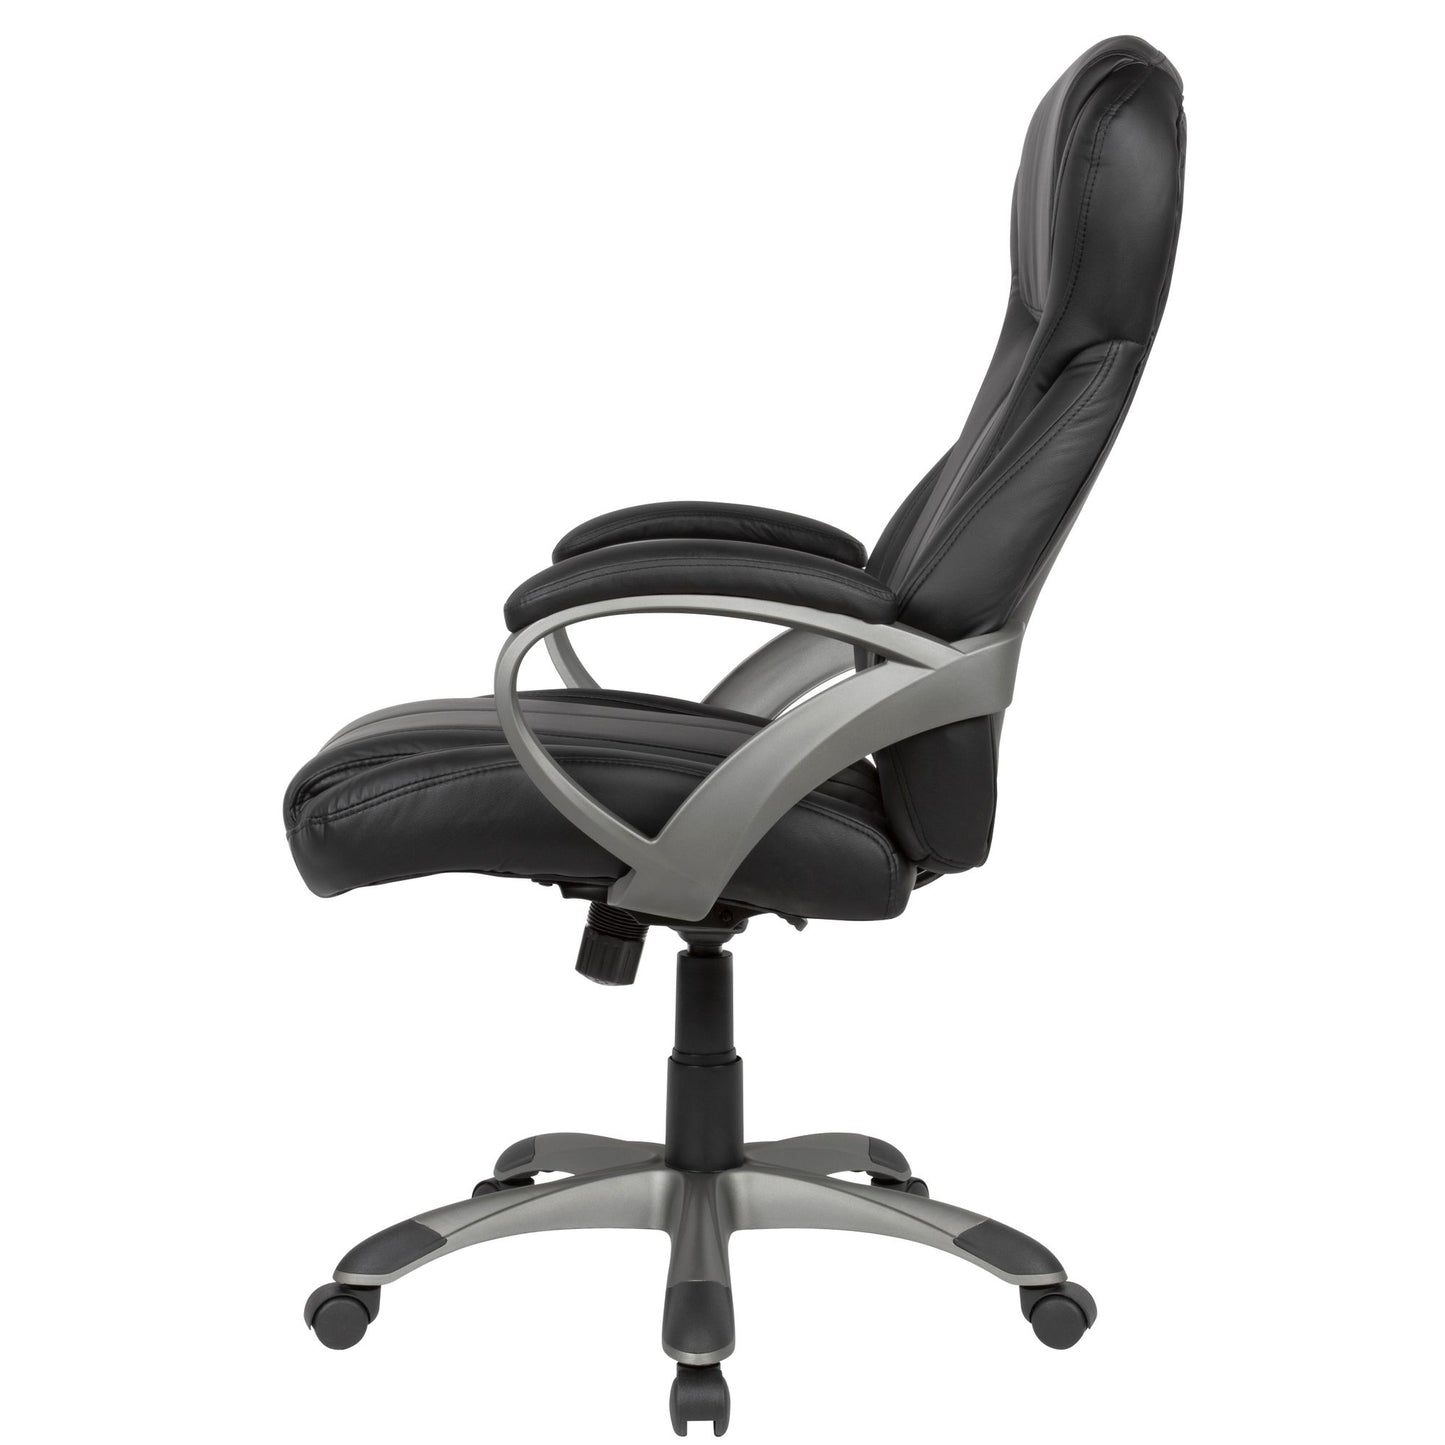 Chaise de bureau Nancy's Revere - Chaise pivotante - Chaise de bureau - Chaise d'ordinateur - Faux cuir - Noir